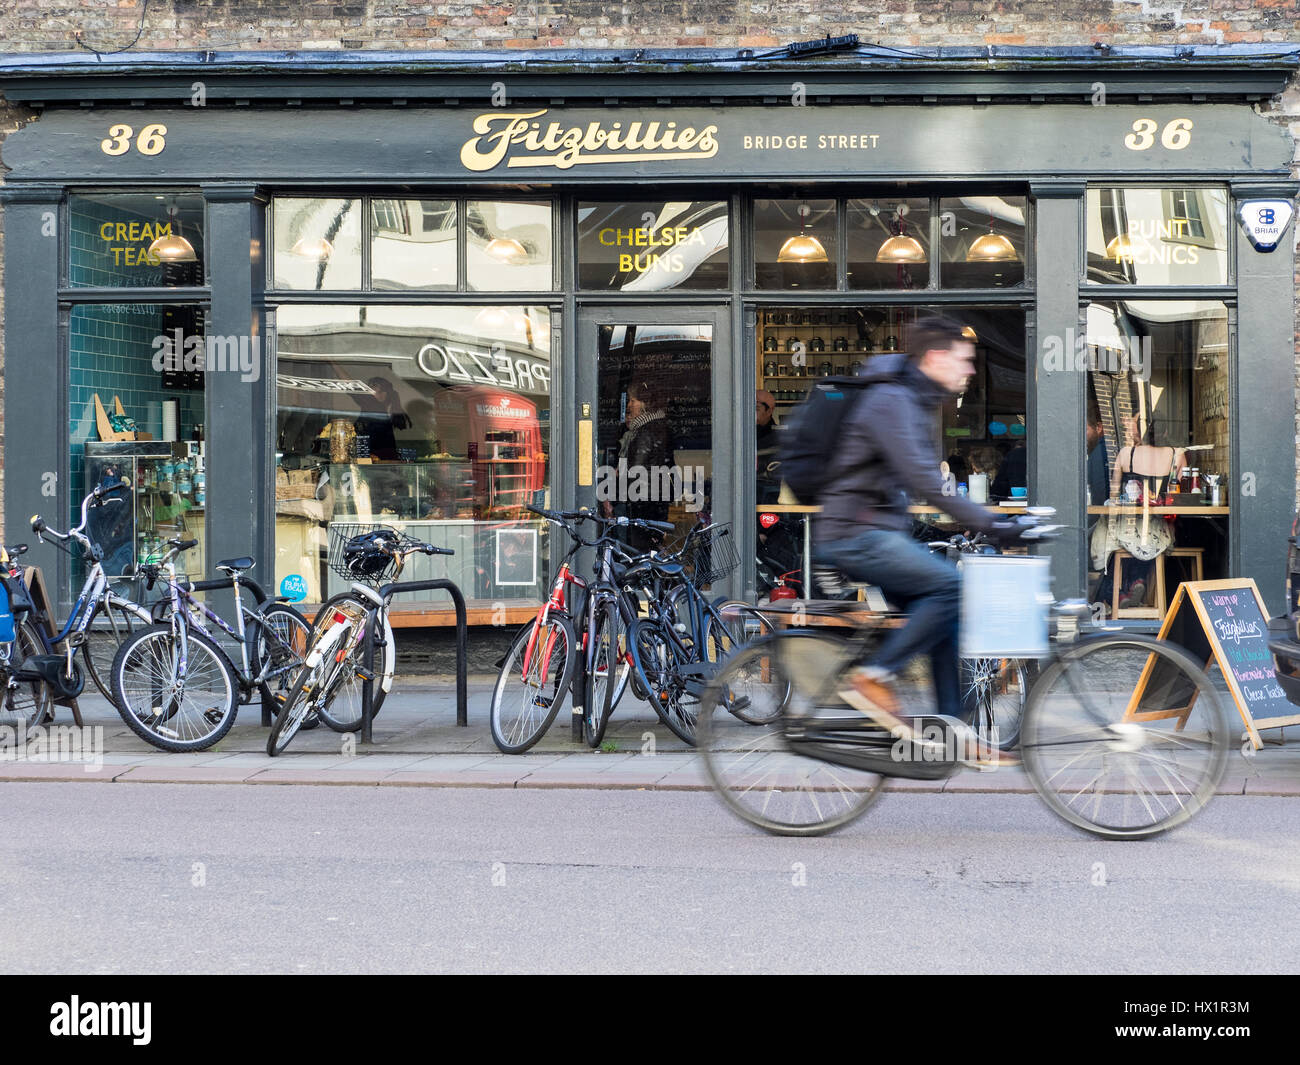 Un cycliste passe Cambridges célèbre Fitzbillies café/restaurant, célèbre pour son sticky buns Chelsea. Banque D'Images